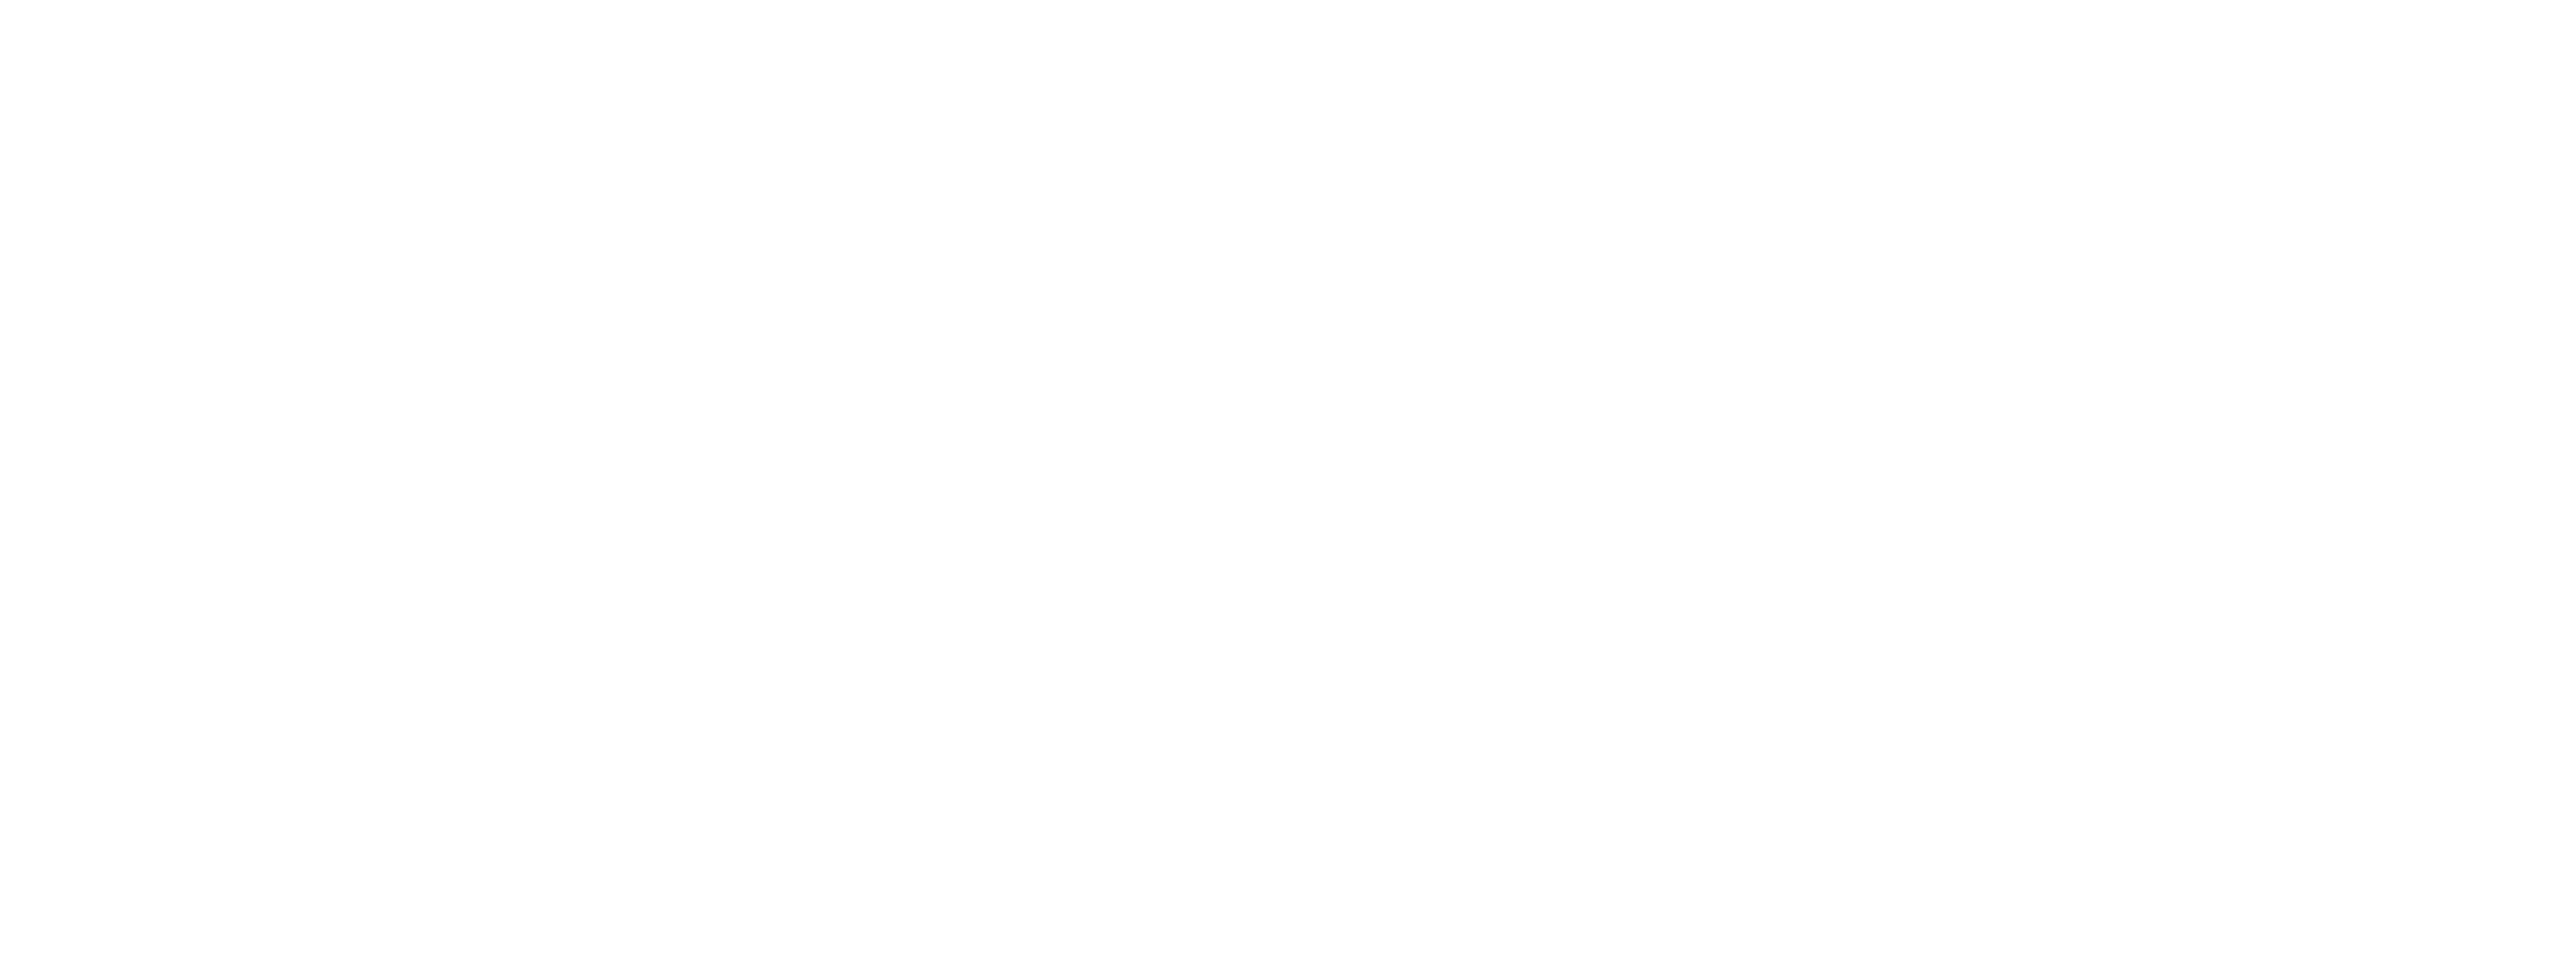 Air Pollution Savings